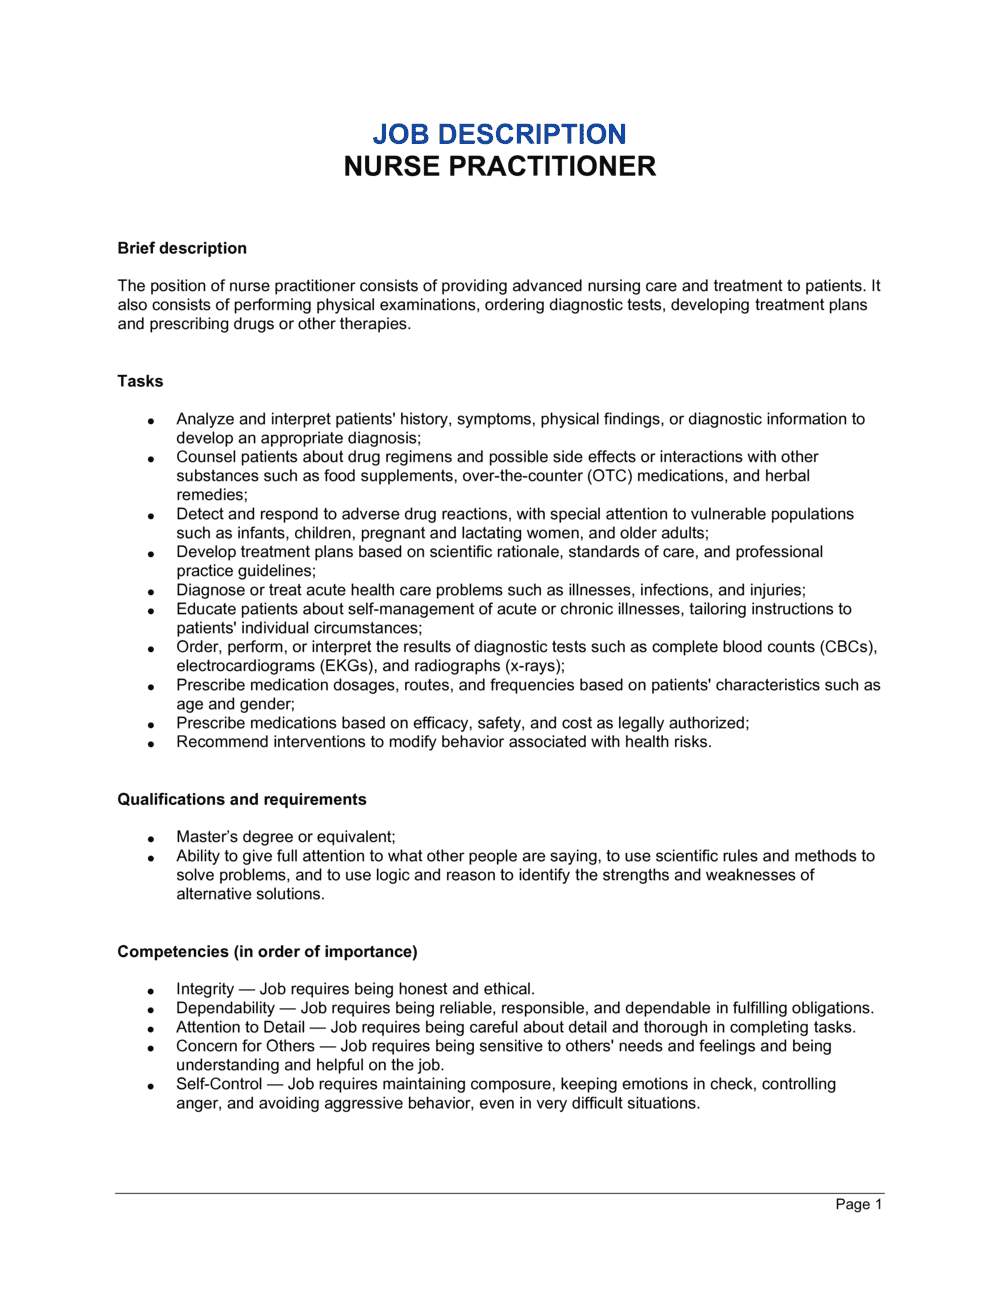 Specialist nurse practitioner job description